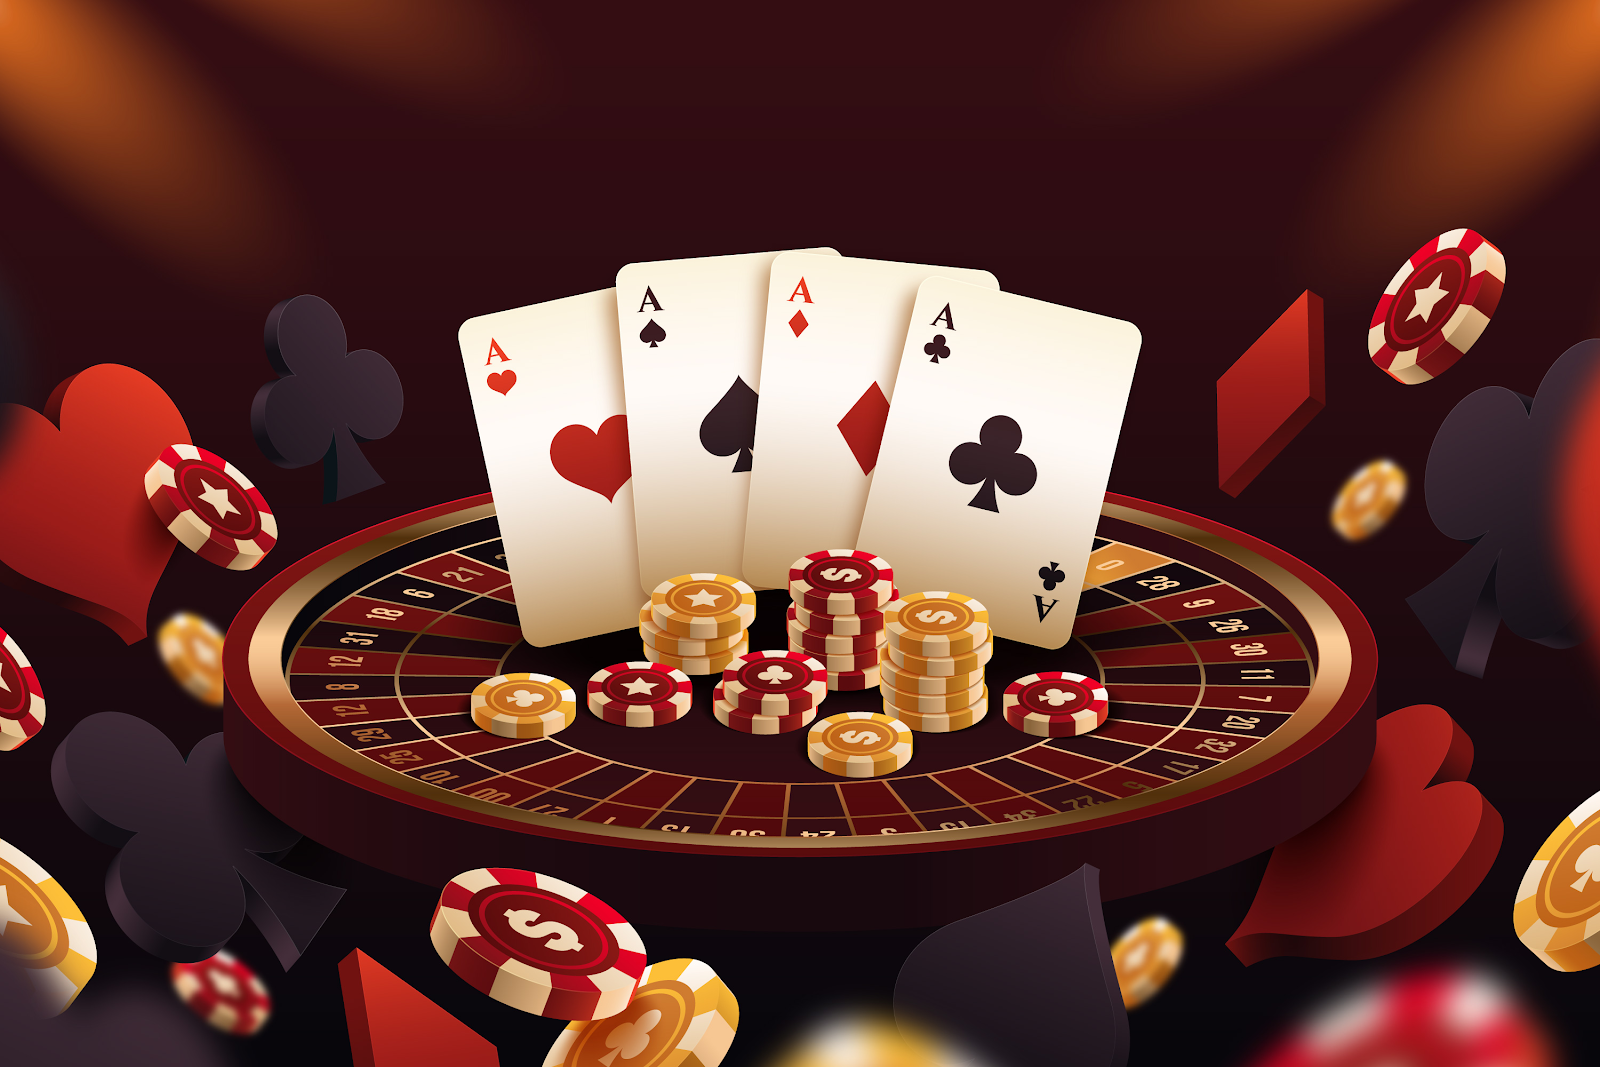 Pocket Cards in Poker